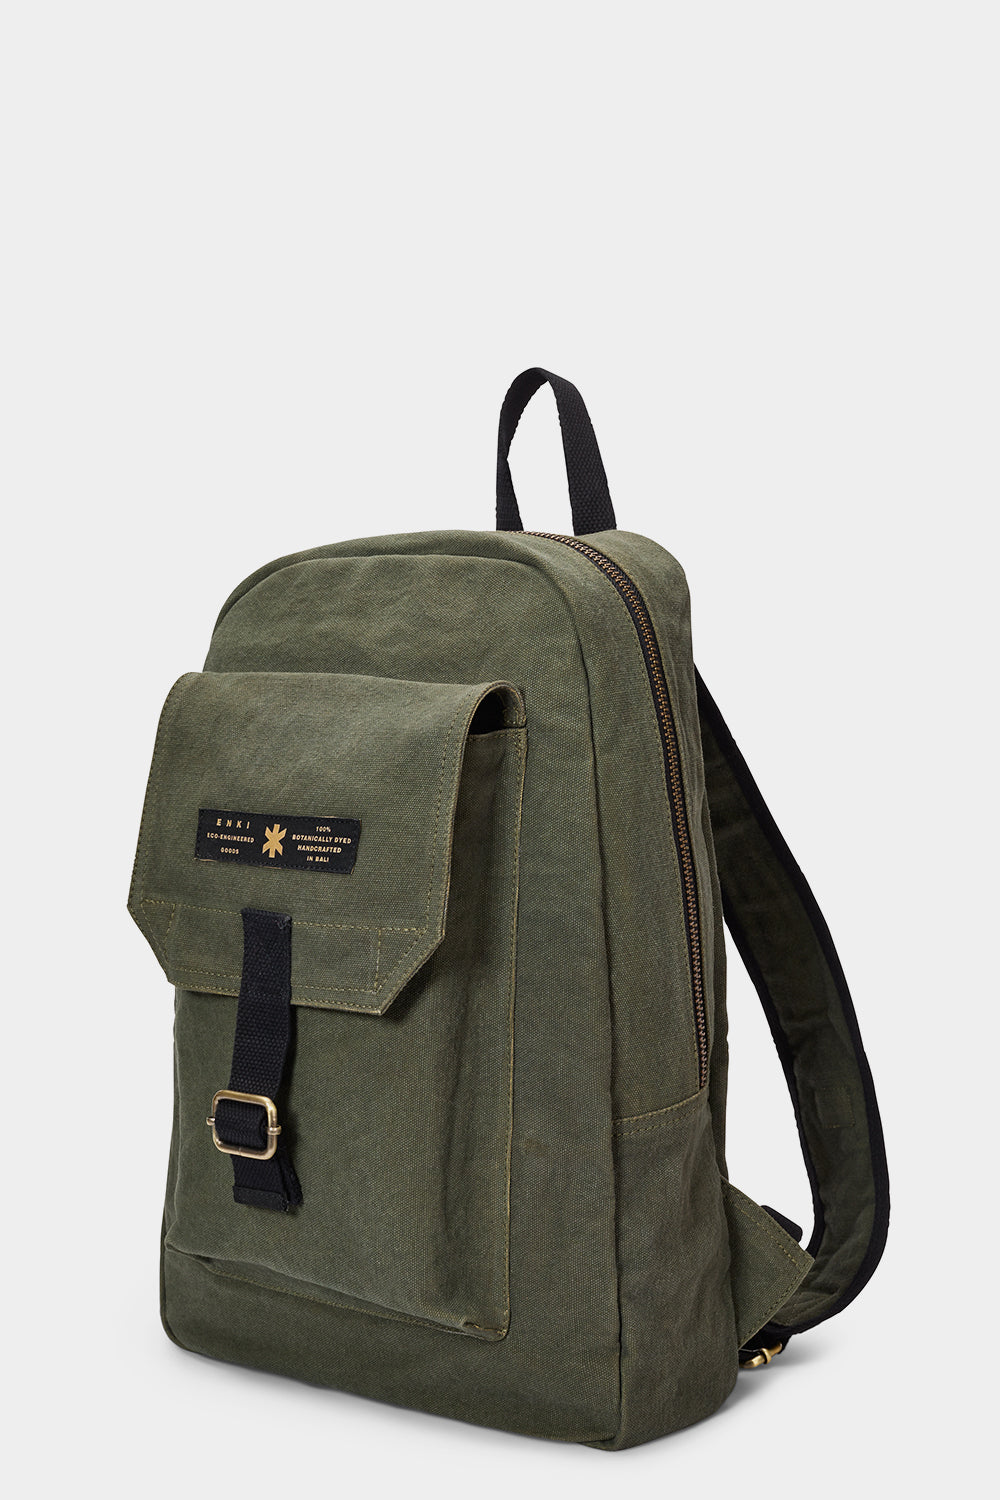 www.enkieyewear.com Enki Eco Psyche Men’s and Women’s Zipper Backpack 